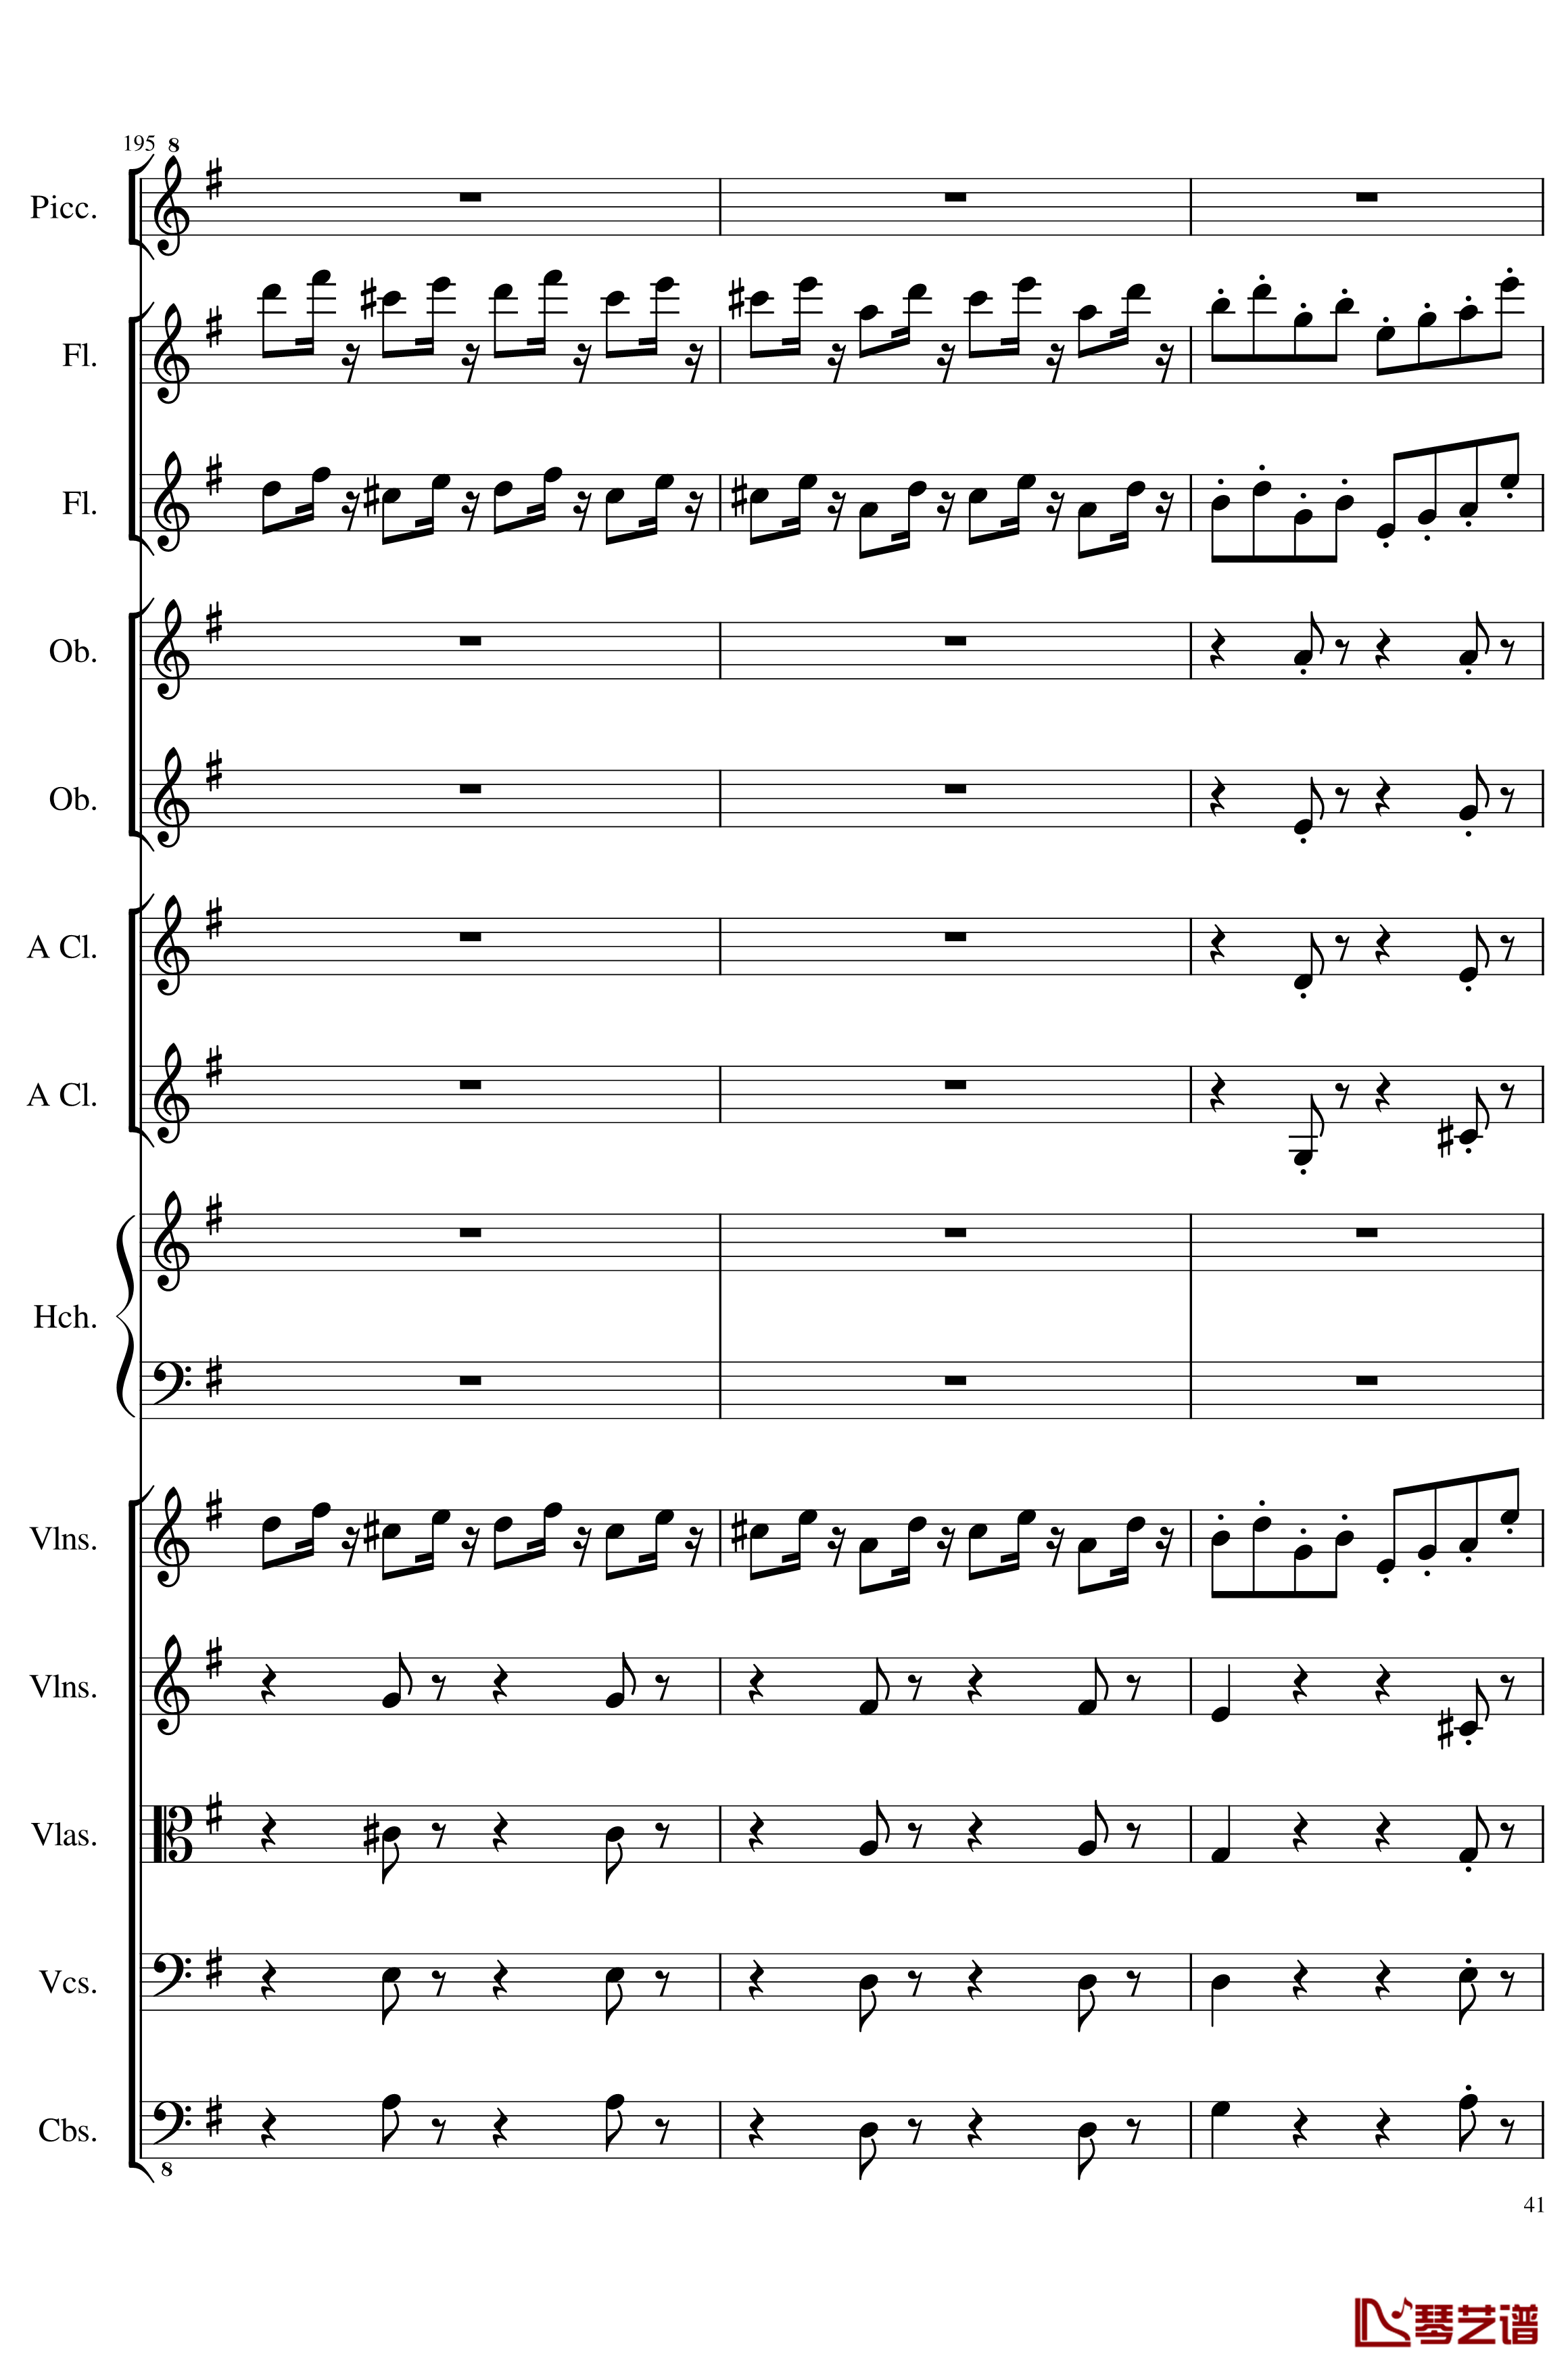 7 Contredanses No.1-7, Op.124钢琴谱-7首乡村舞曲，第一至第七，作品124-一个球41